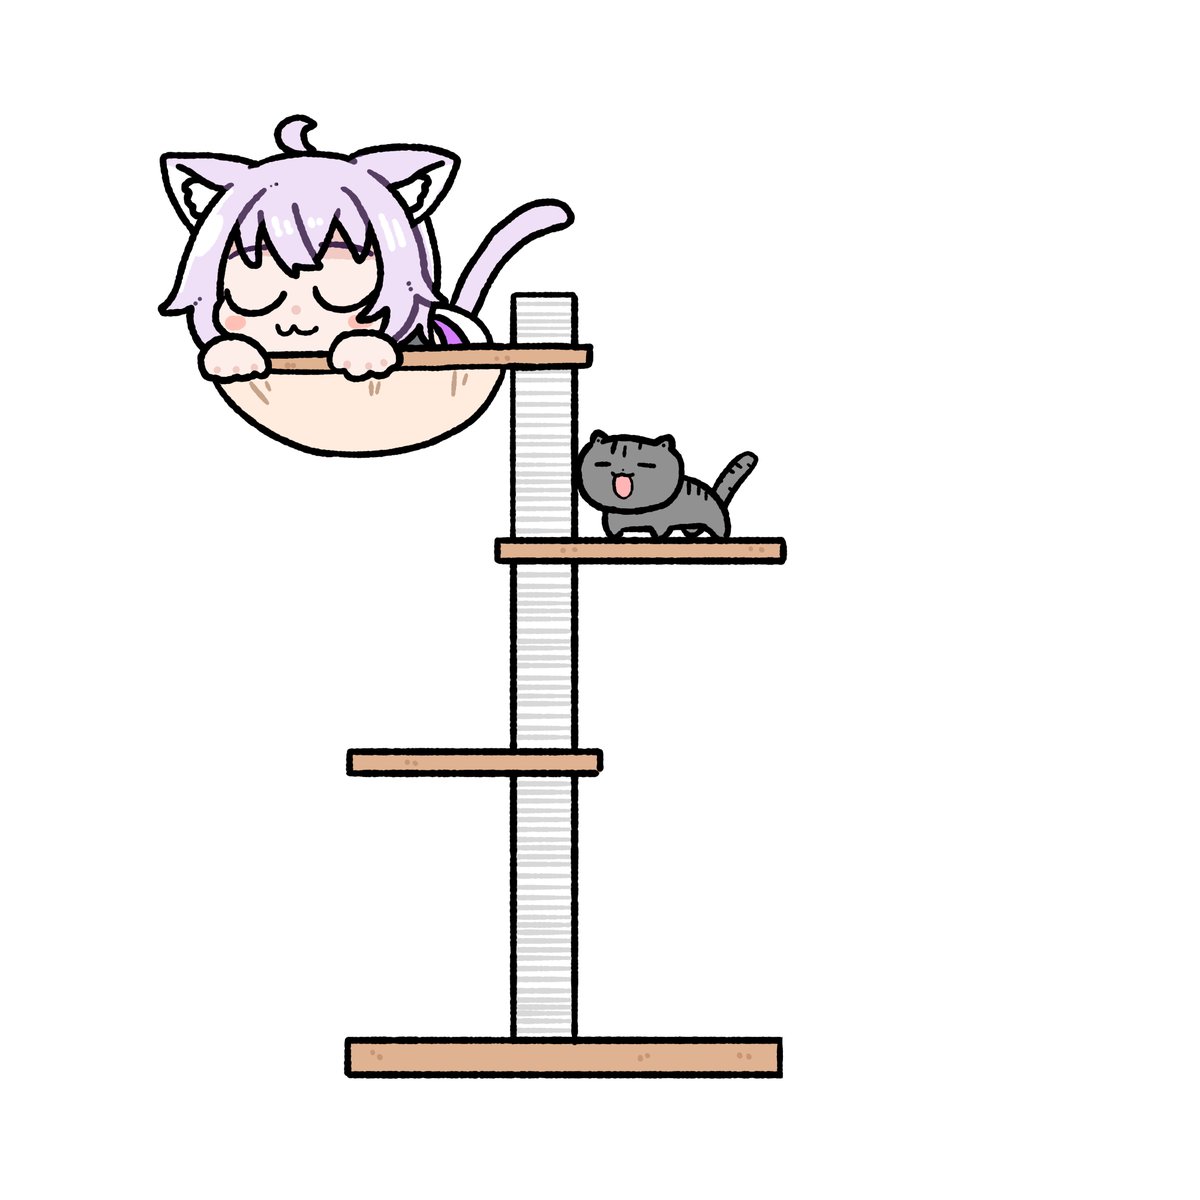 猫又おかゆ 「#絵かゆキャットタワーおかゆん 」|honmirinのイラスト